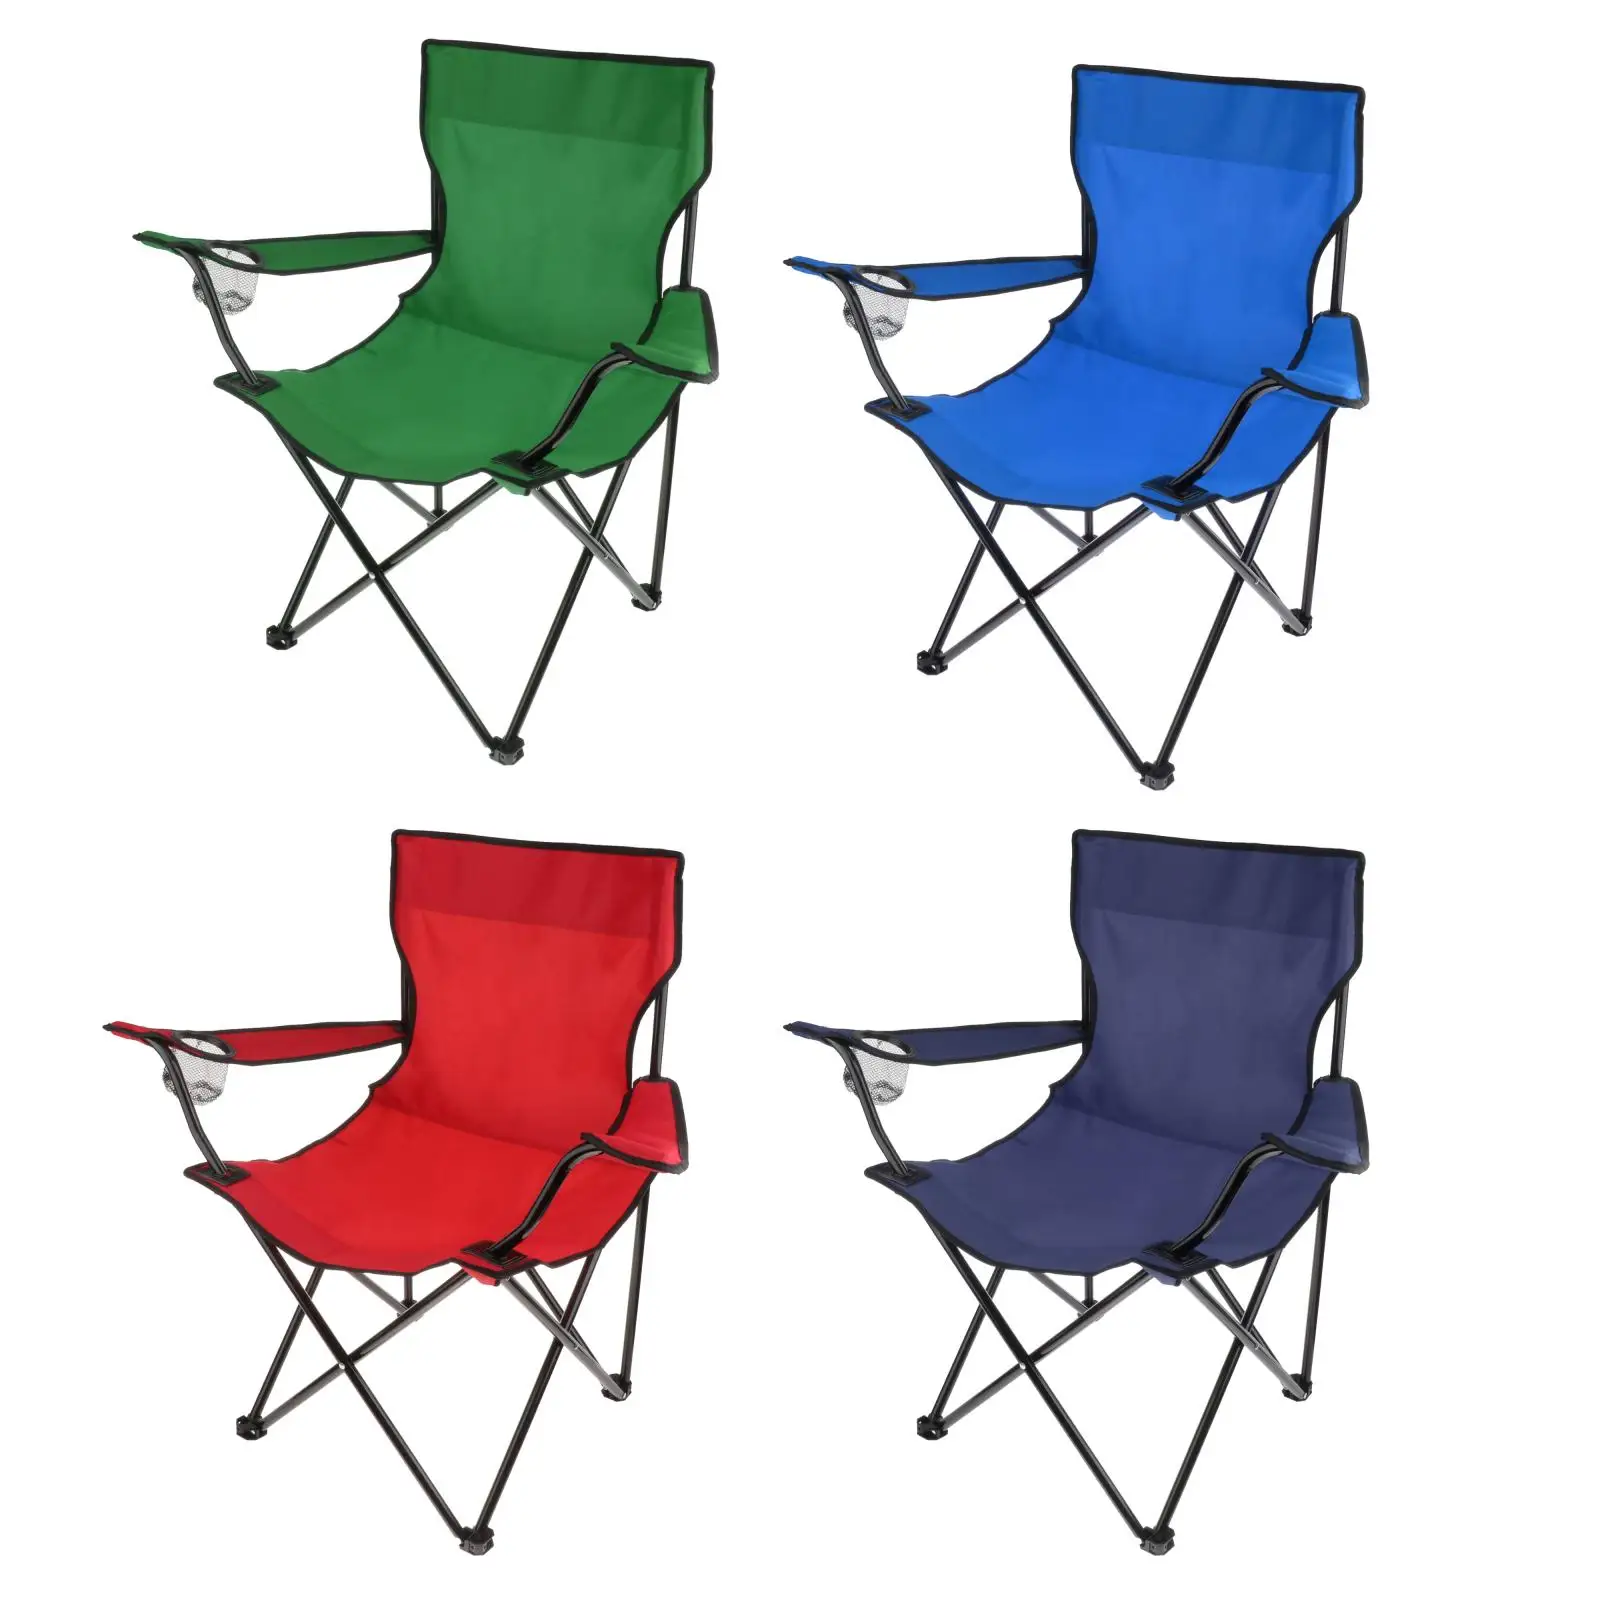 

Складные стулья складные туристические стулья с держателем для чашки, подставка для рук, для рыбалки, пляжа, сада, путешествий, сверхпрочное...